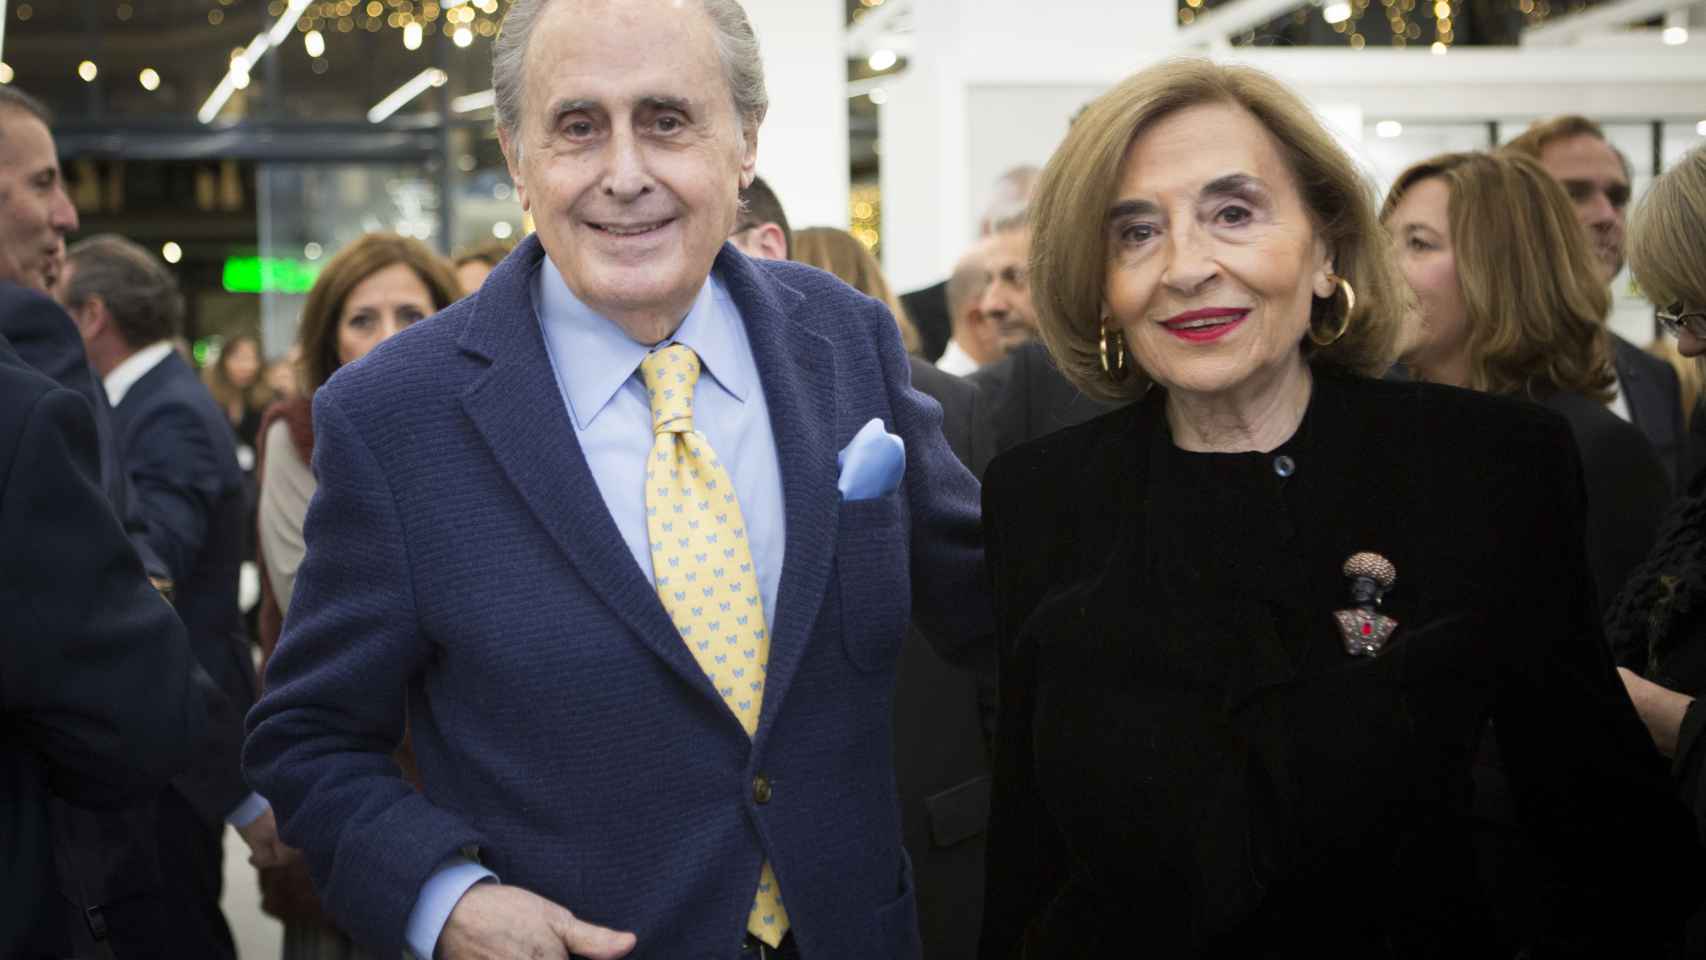 Jaime Peñafiel y su mujer Carmen en la inauguración de una tienda de Porcelanosa en Castellón en 2018.